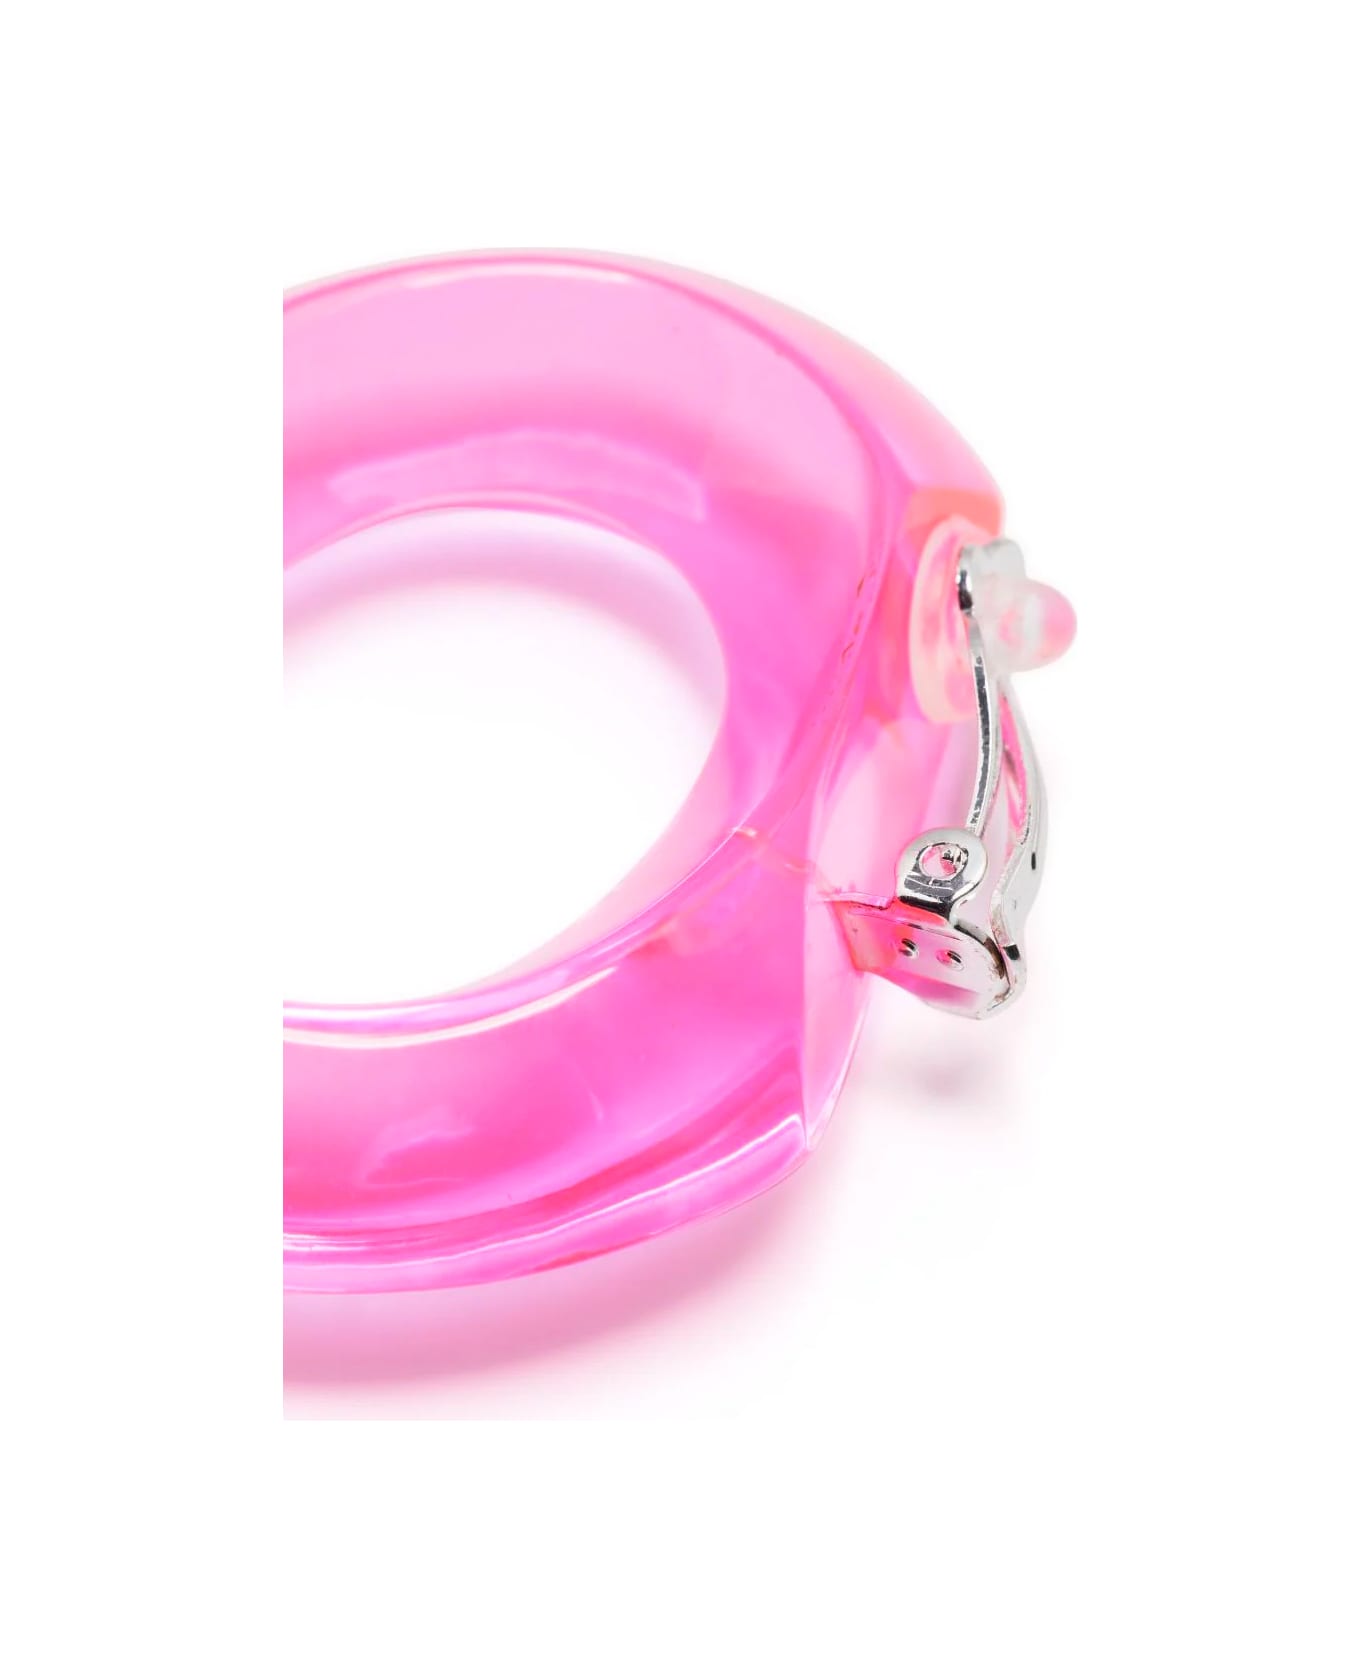 Monies Flotti Earring - Pink イヤリング